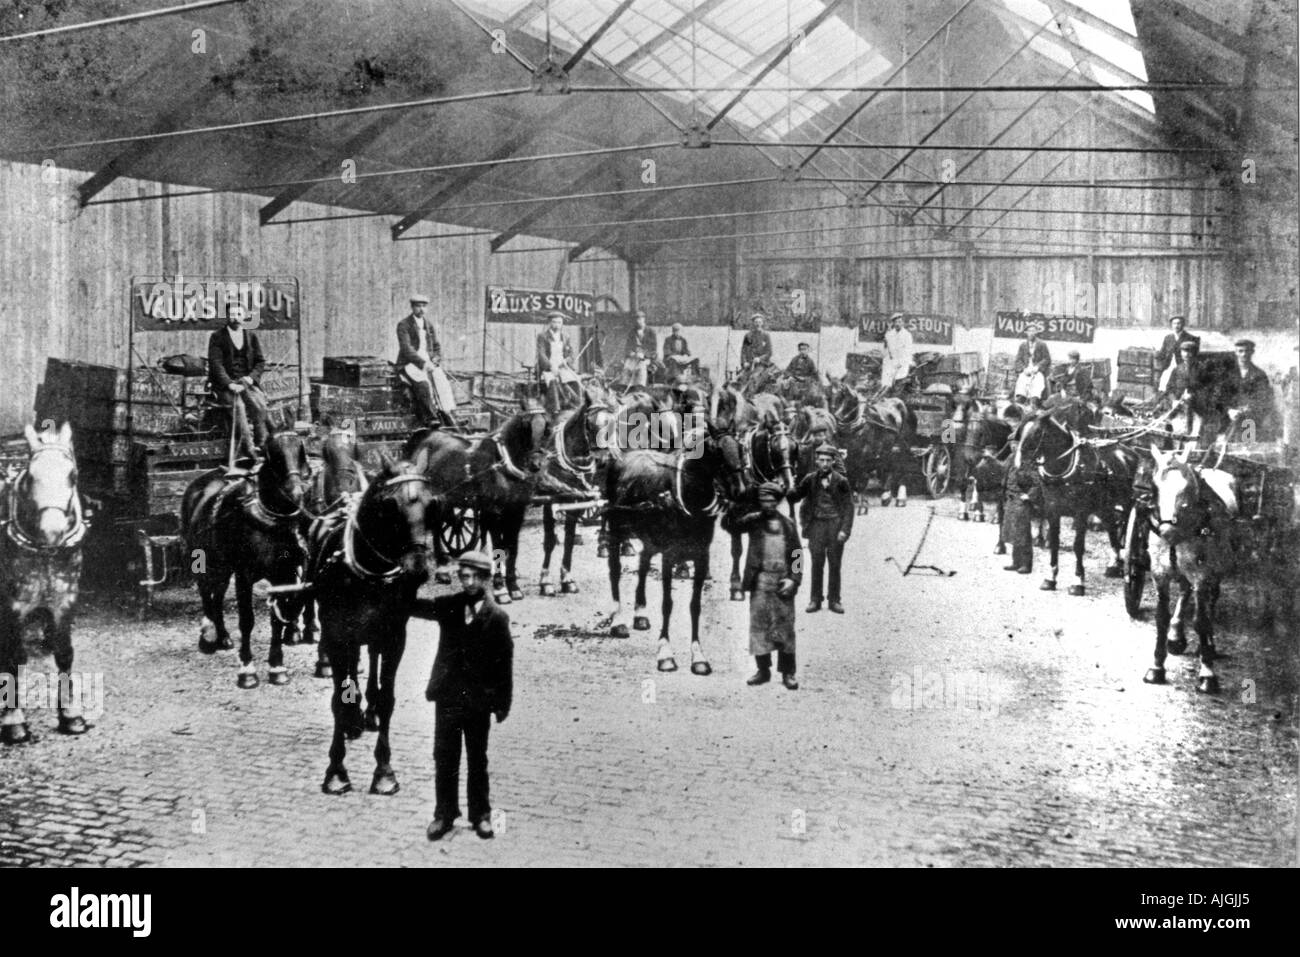 La baie de chargement, Vaux Brewery, 1905 Photo de la brasserie et ses bières Sunderland drays livraison prêt à sortir Banque D'Images